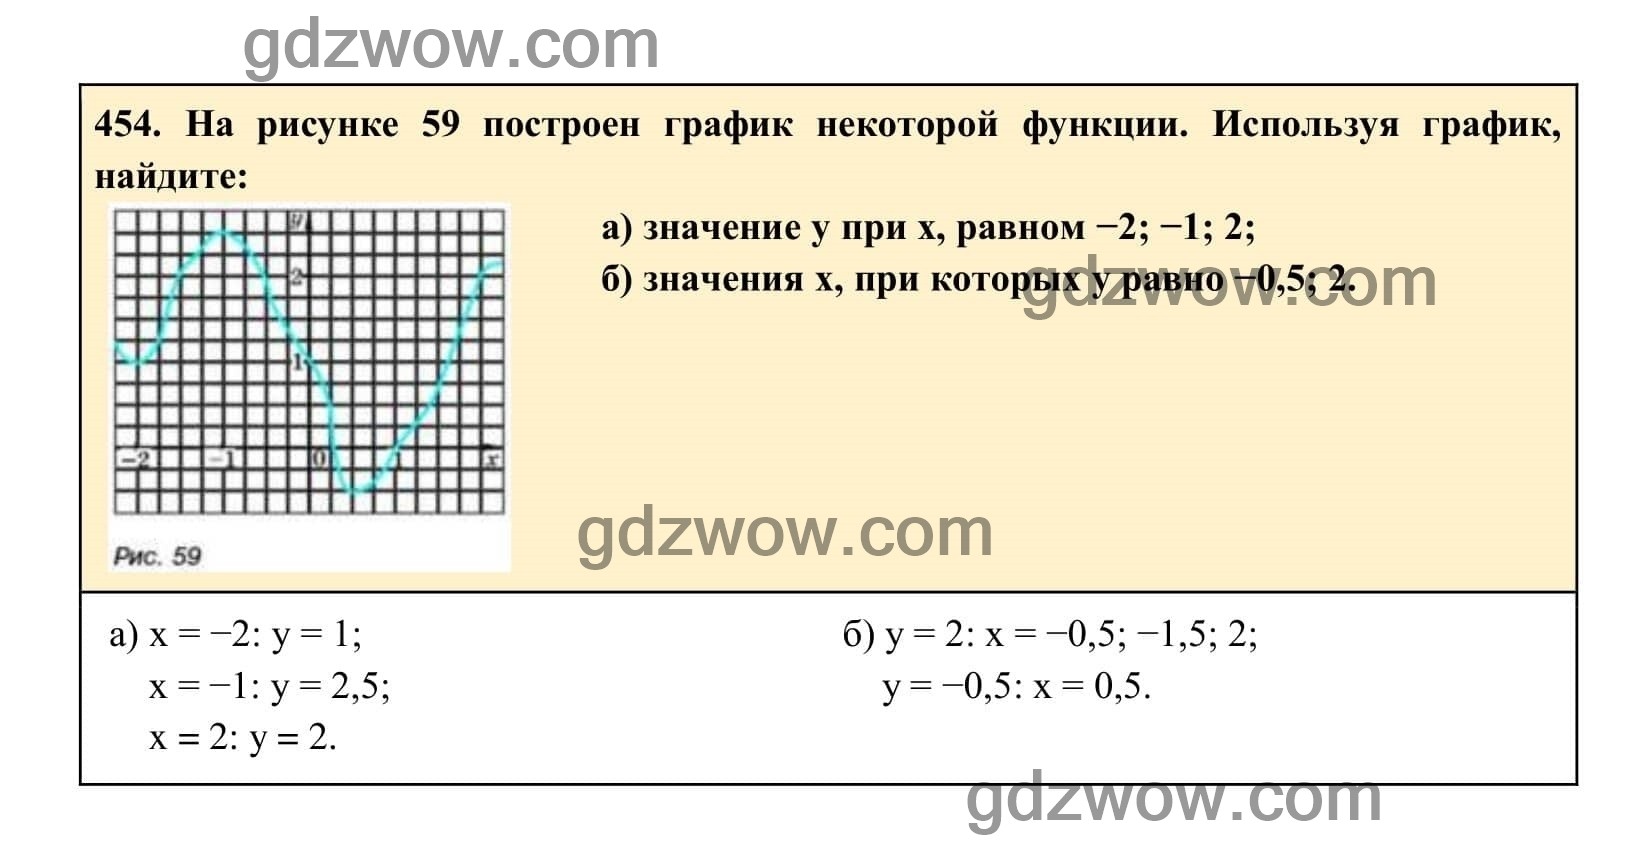 Упражнение 454 - ГДЗ по Алгебре 7 класс Учебник Макарычев (решебник) - GDZwow